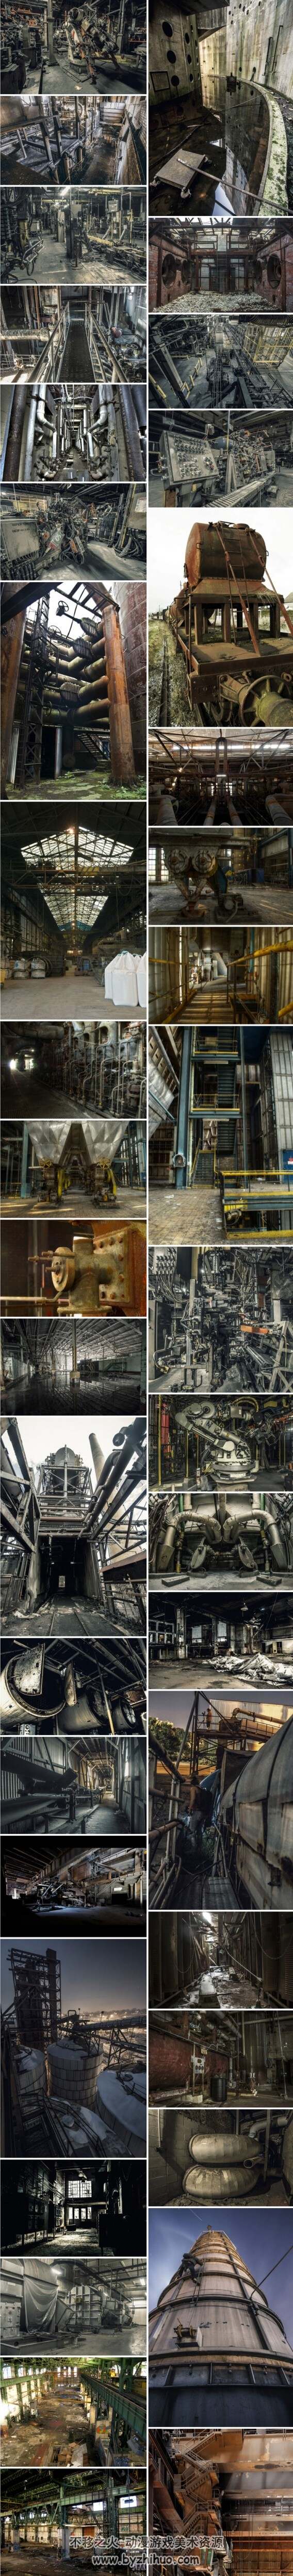 各类机械工业场景摄影图集 背景参考素材 382P